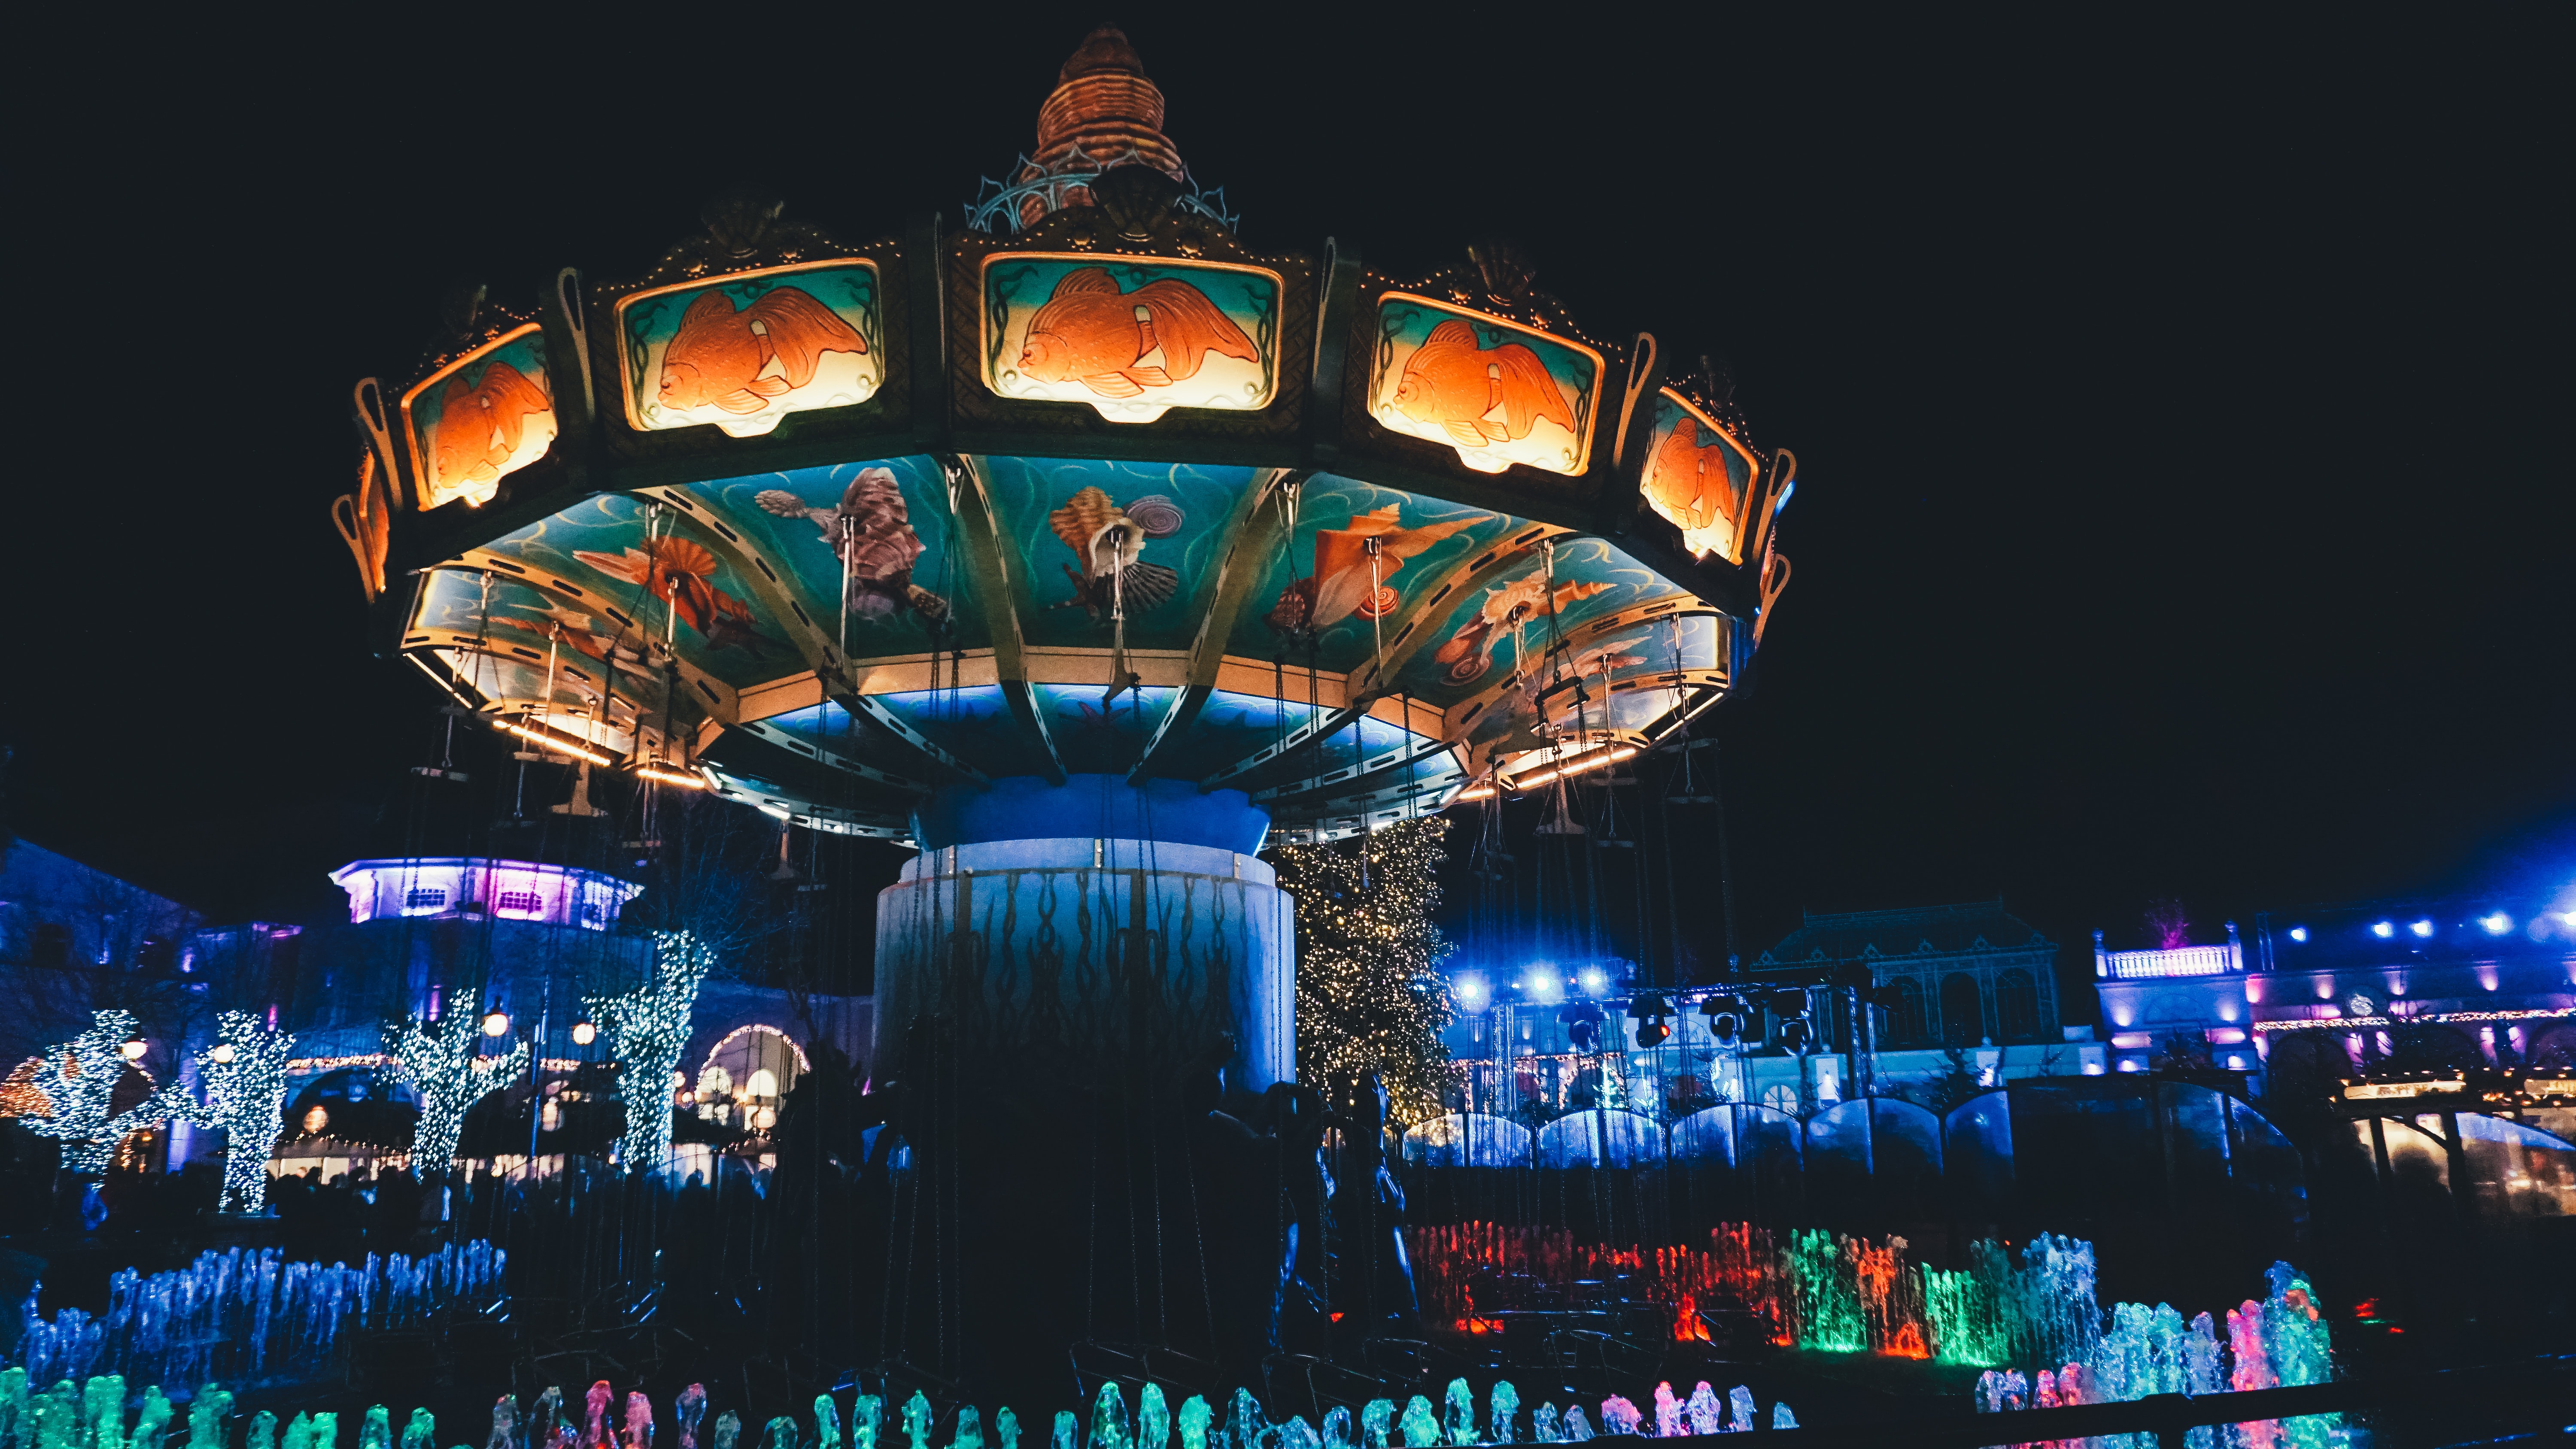 Illuminated chain carousel in Phantasialand.